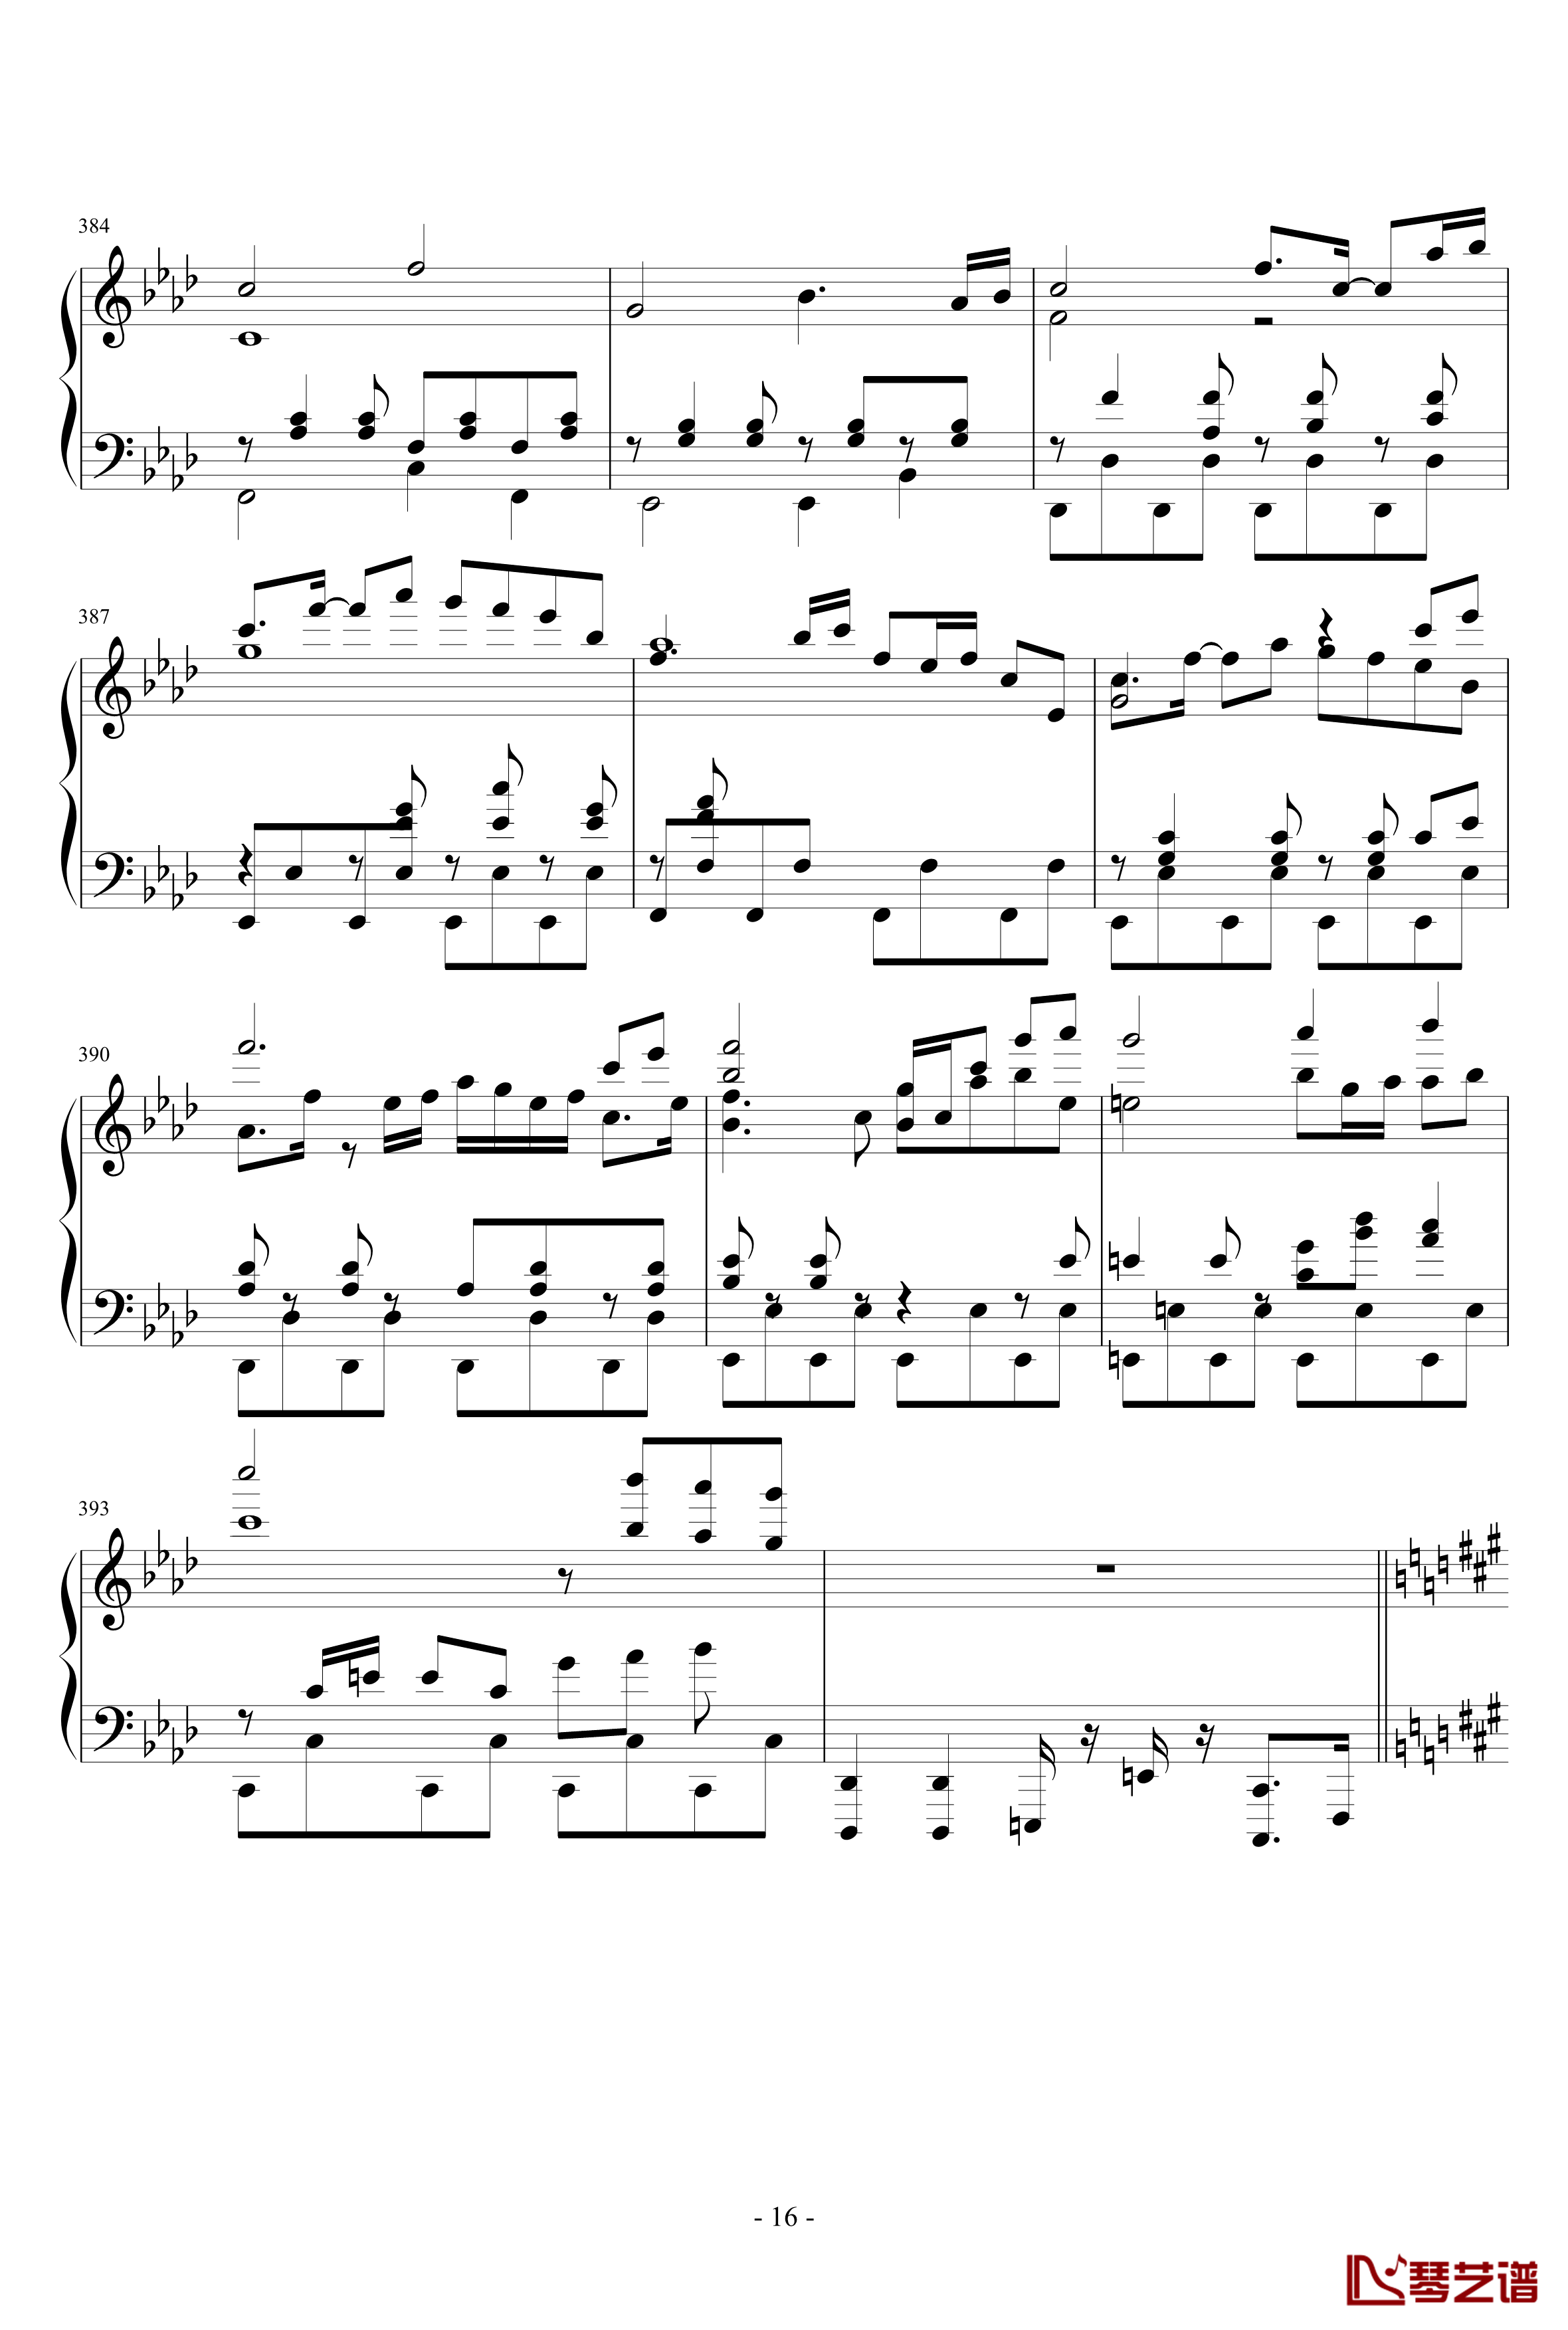 東方連奏曲II Pianoforte钢琴谱-第二部分-东方project16